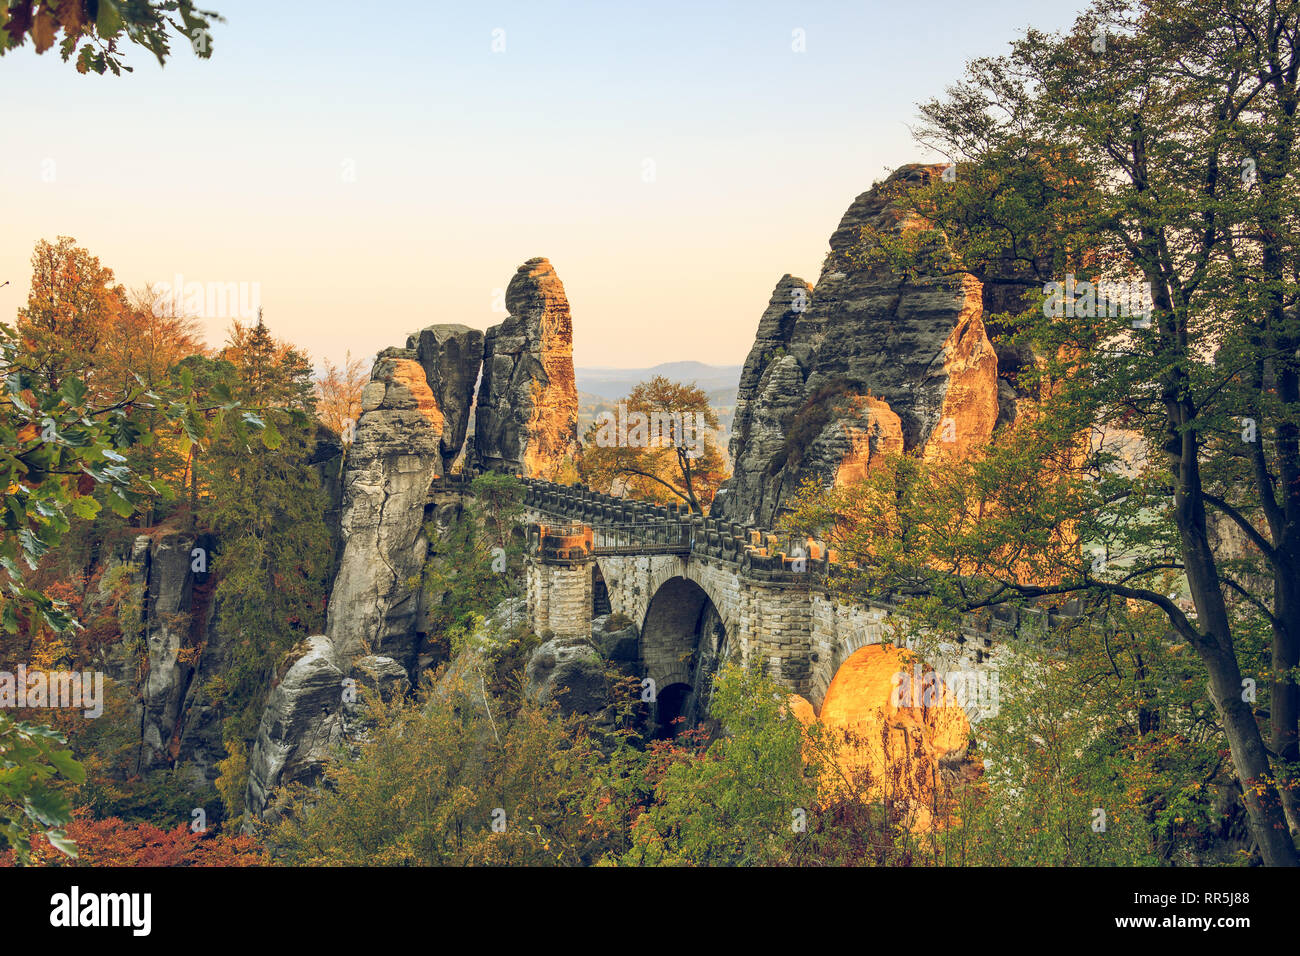 Bastei pont dans la Suisse saxonne parc national. Coucher du soleil dans des montagnes de grès de l'Elbe avec les arbres en couleurs d'automne et de formations rocheuses. Banque D'Images